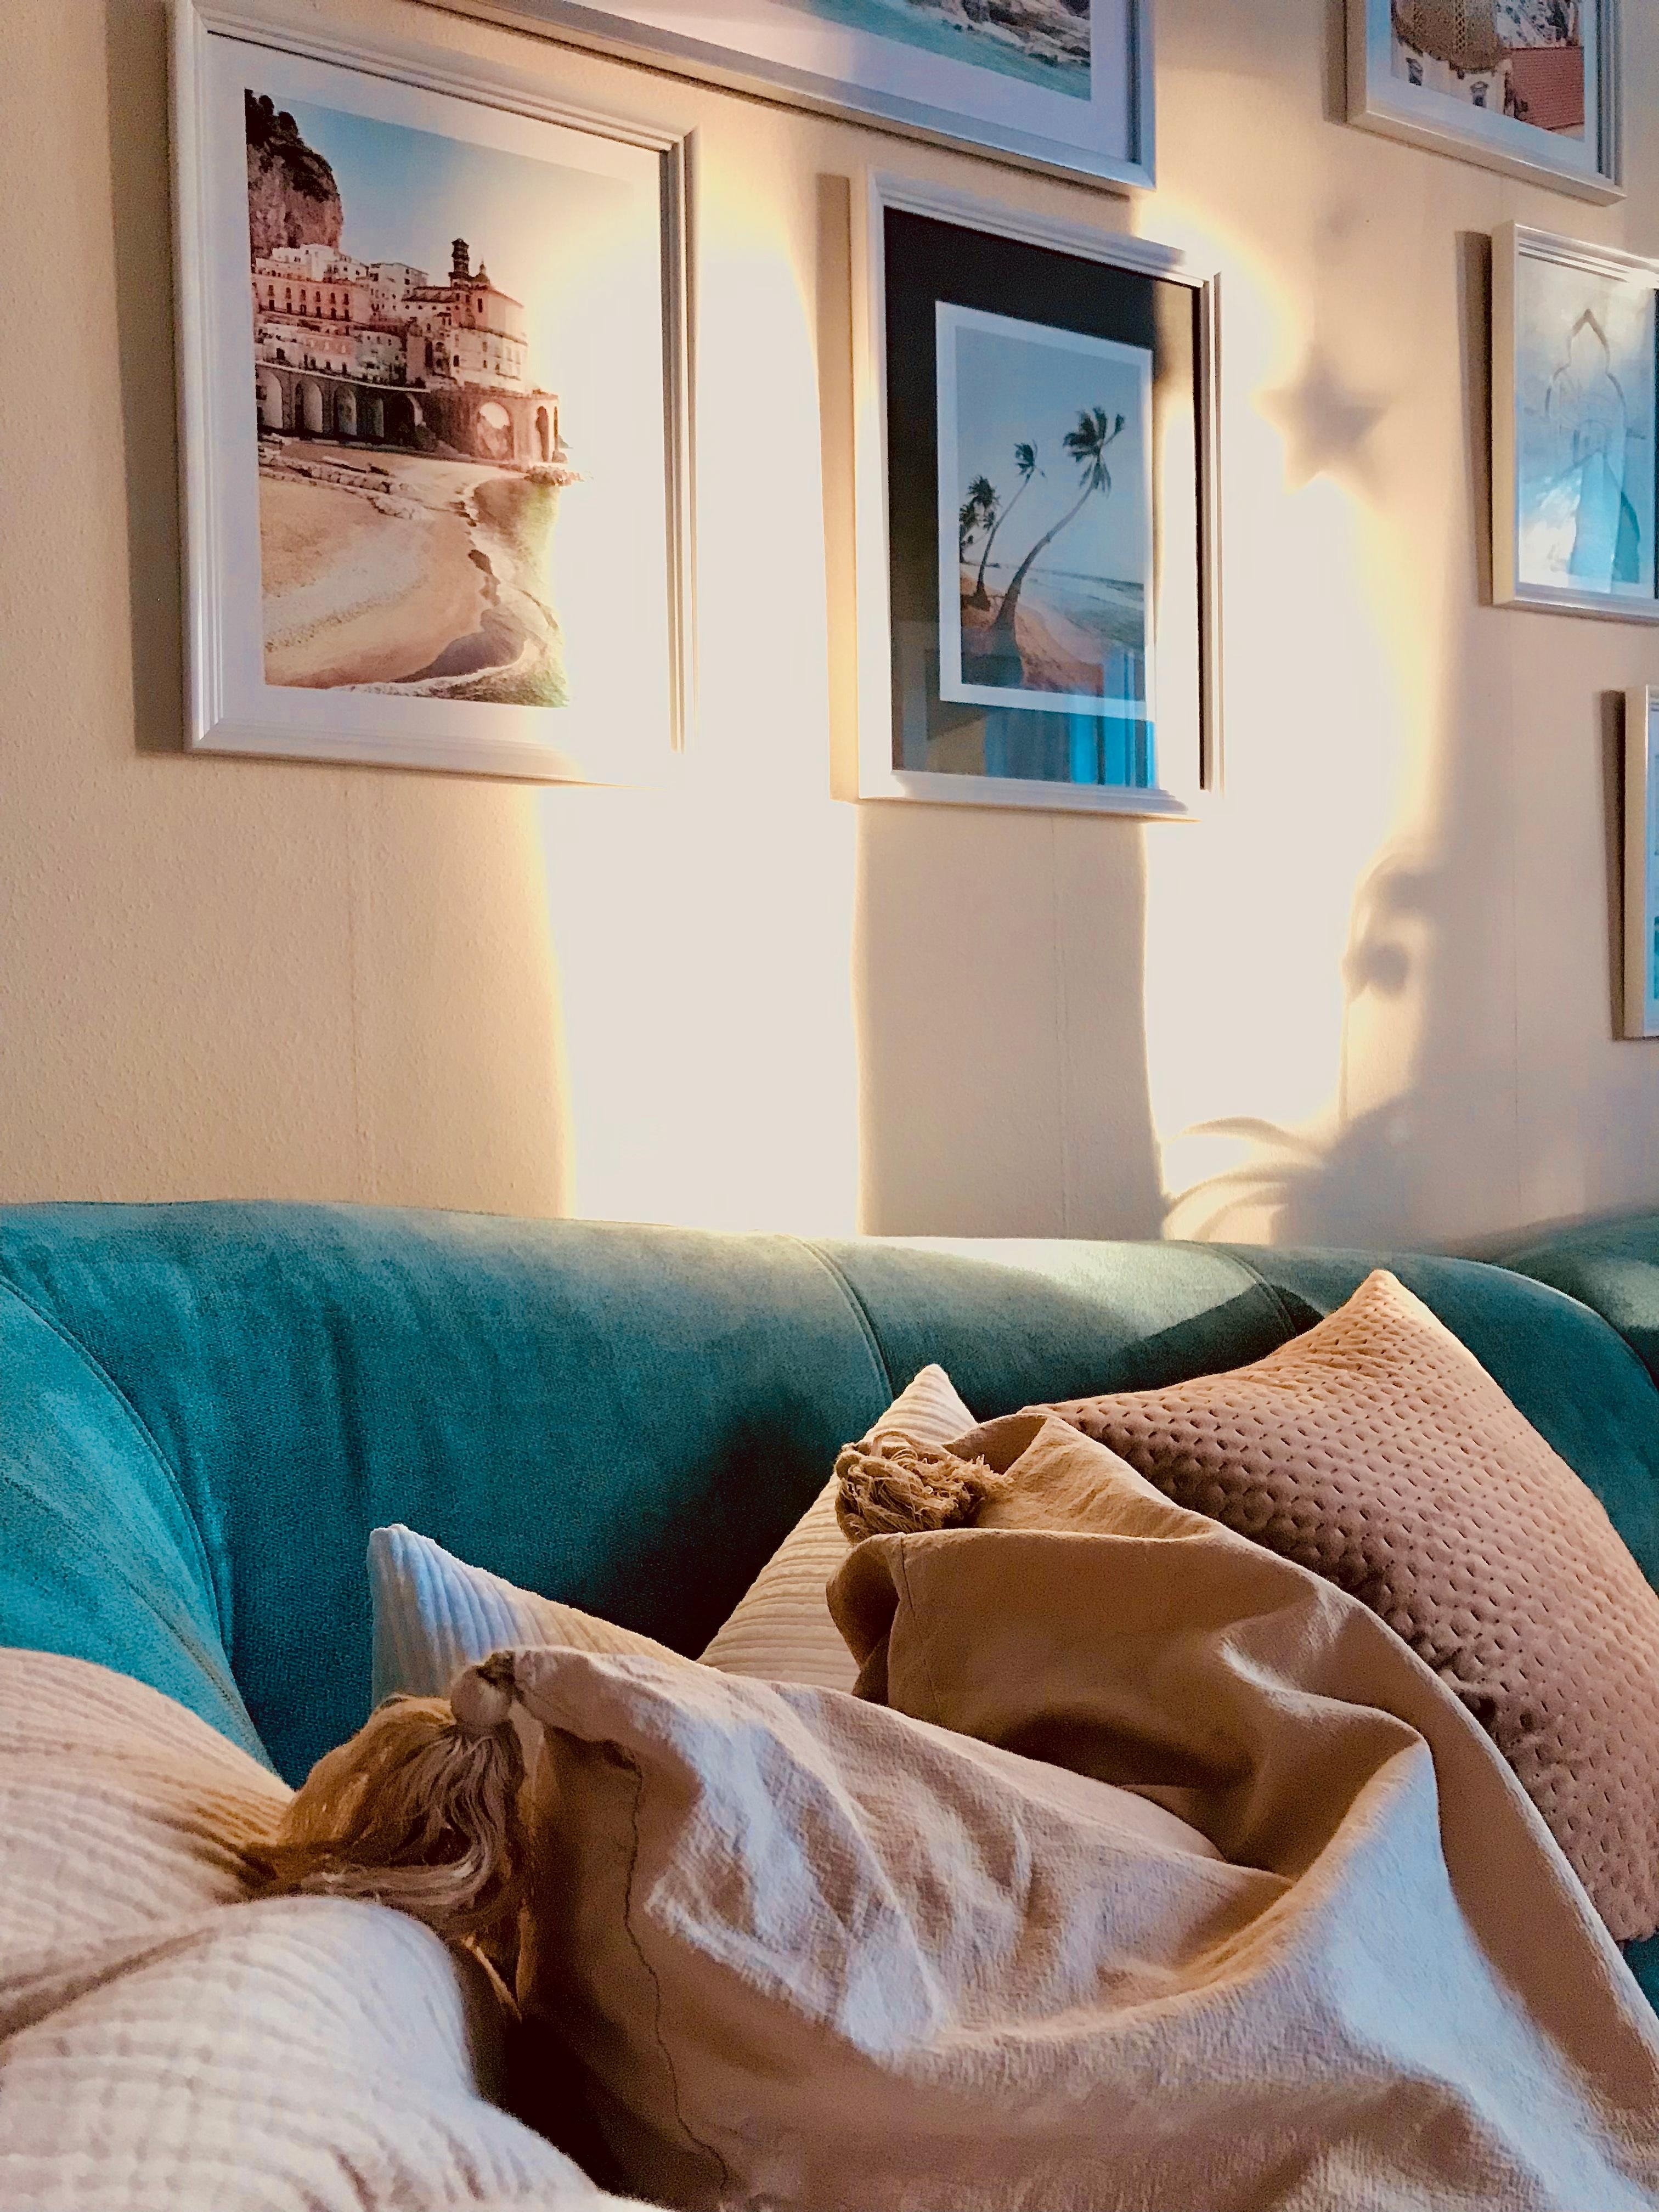 Abendstimmung im Wohnzimmer 
#sonne #kissen #bilderwand #couch 🤍